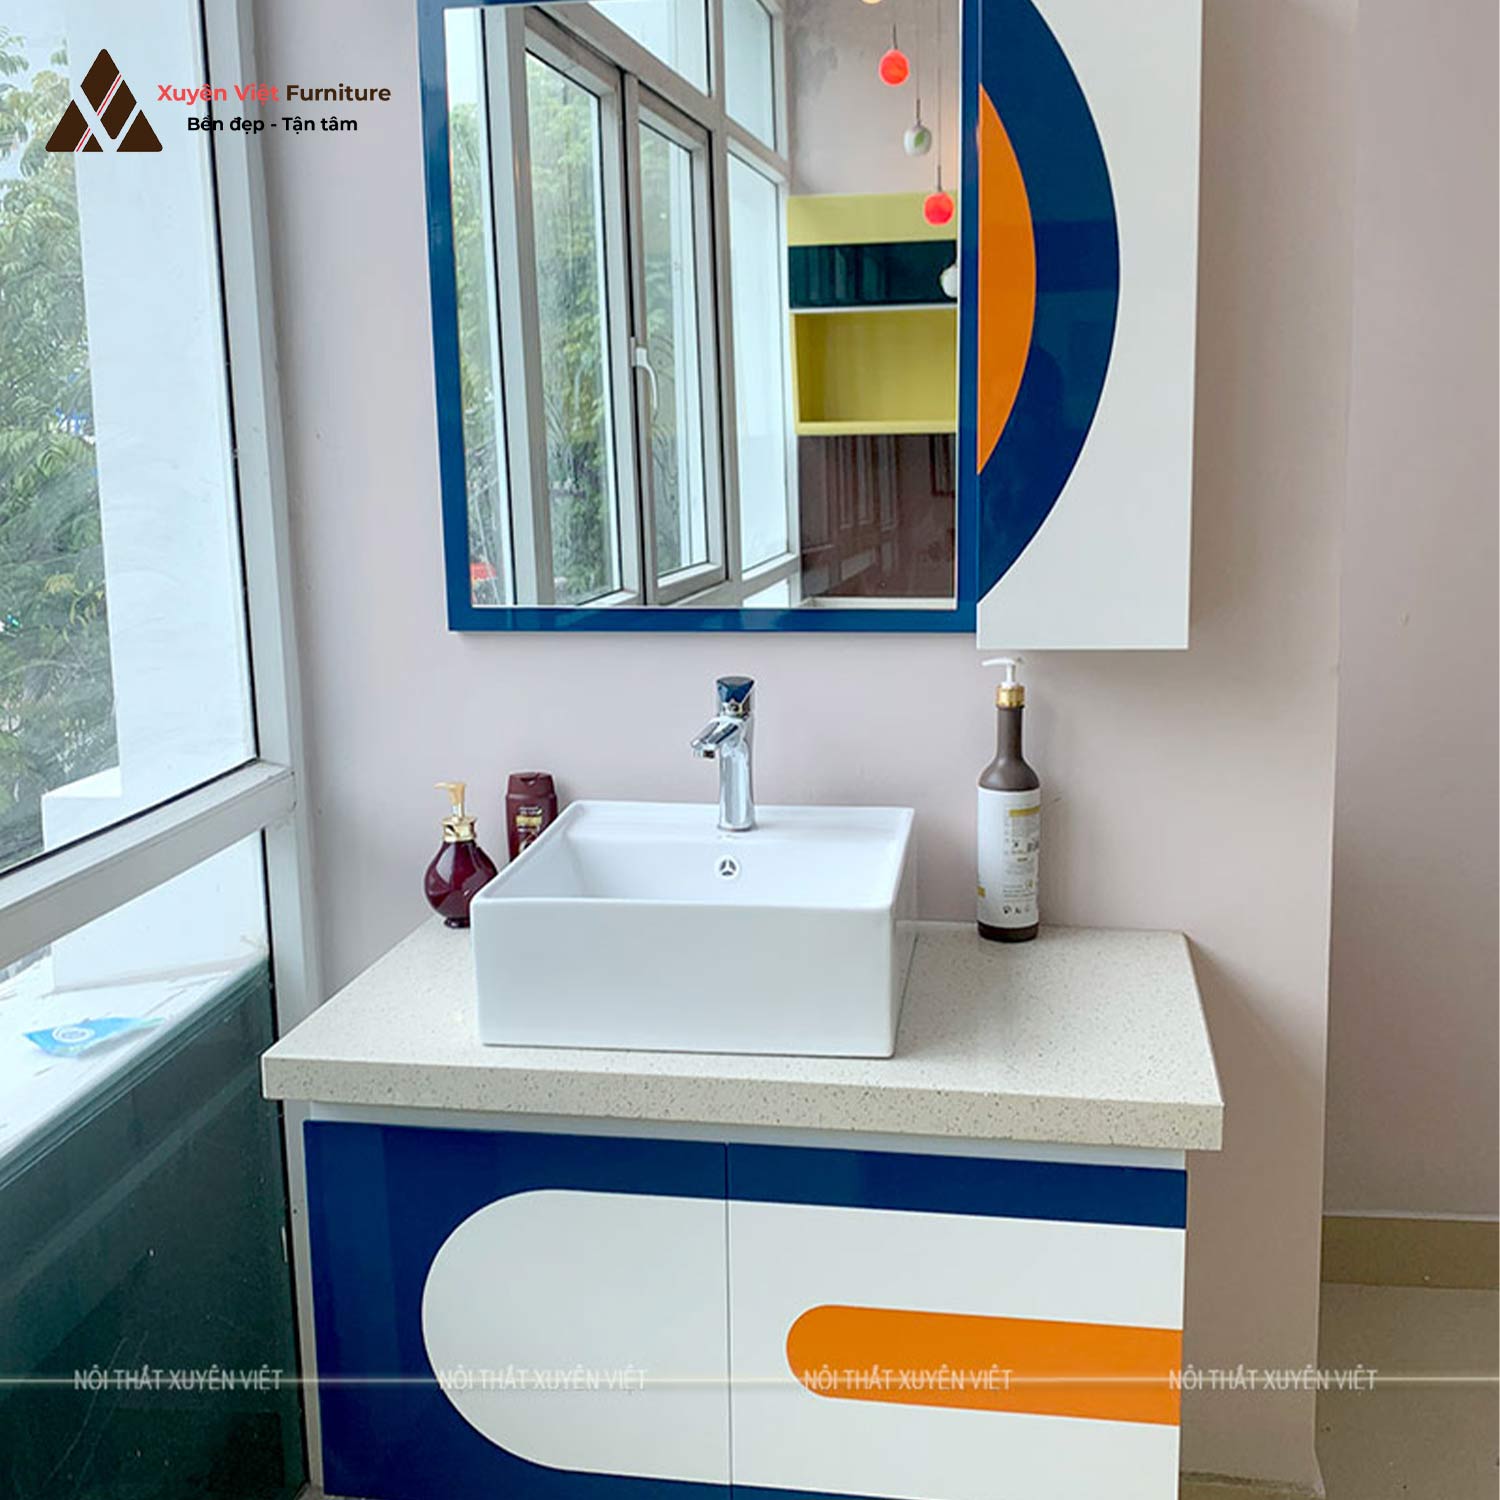 Hình ảnh bộ tủ lavabo treo tường đa sắc màu LBK4014 hiện đang được bày bán sẵn tại showroom Xuyên Việt